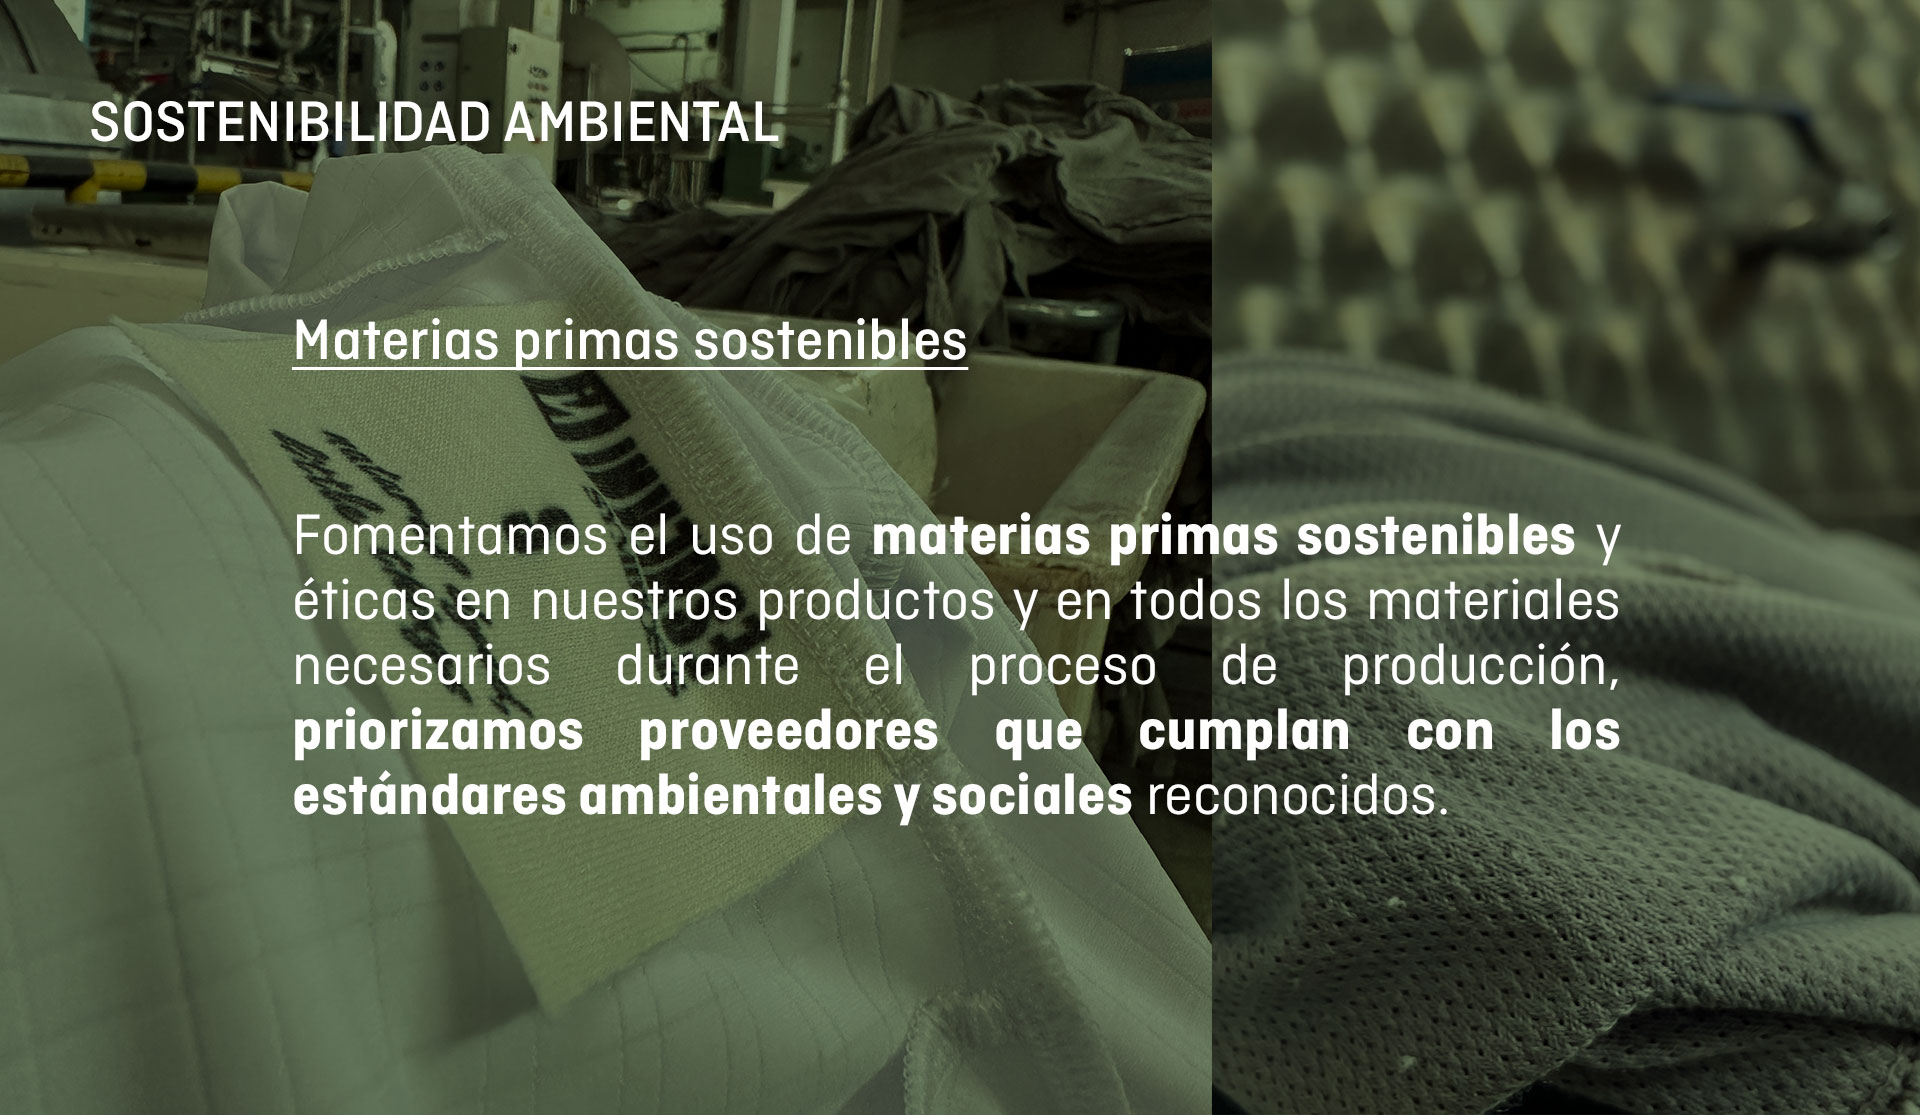 Fomentamos el uso de materias primas sostenibles y éticas durante el proceso de producción.